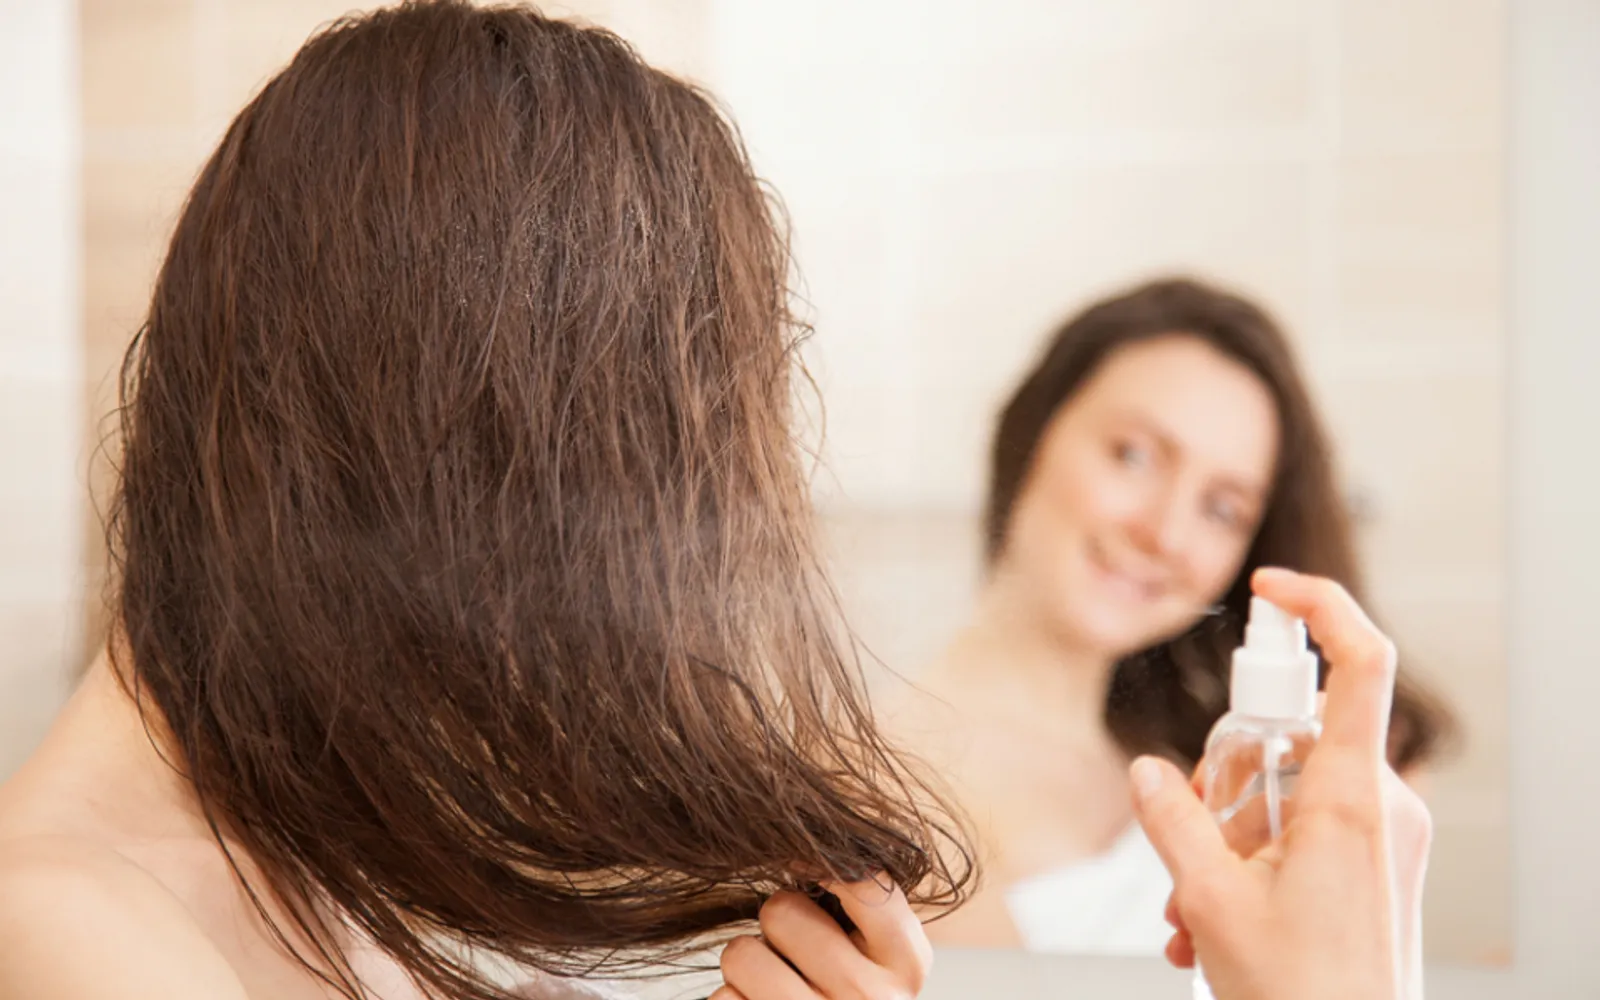 Mudah Banget, Ini 5 Tips Atasi Bad Hair Day untuk Cewek Berhijab 